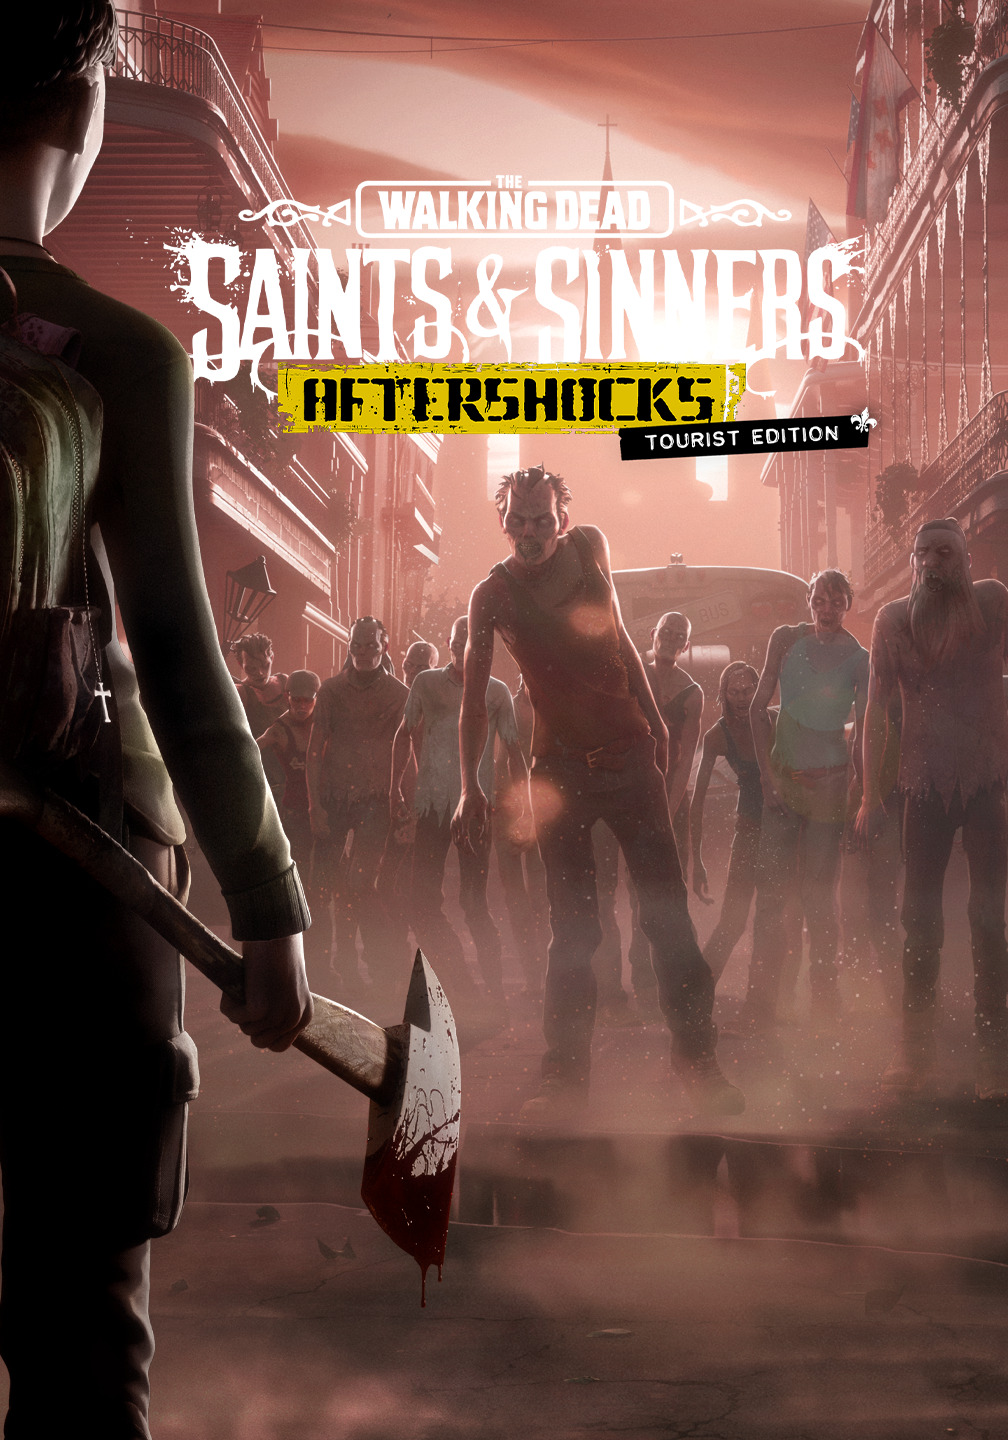 The Walking Dead: Saints & Sinners - Aftershocks, Walking Dead Wiki